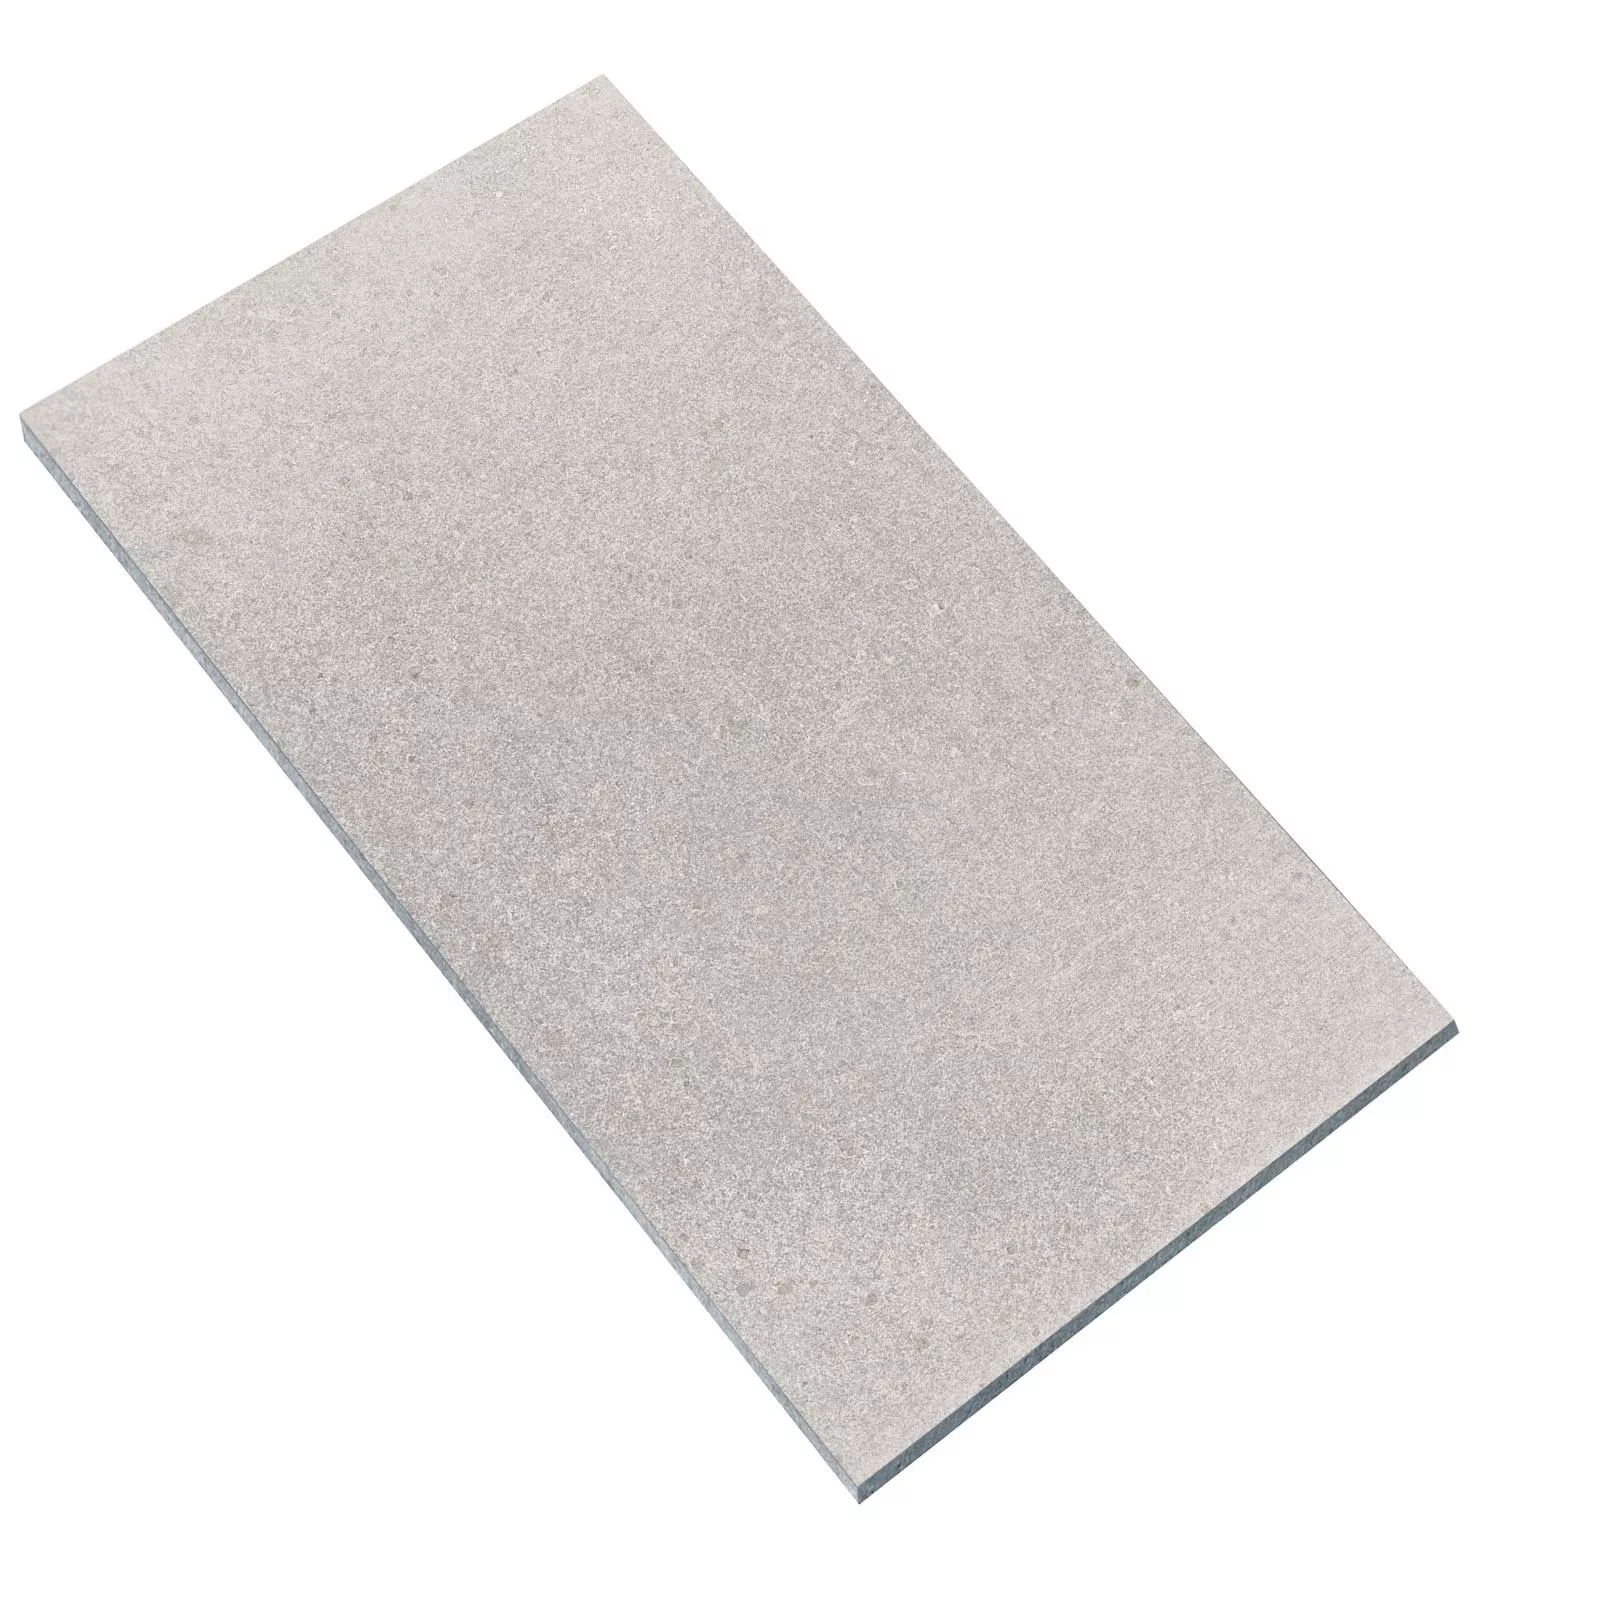 Floor Tiles Stone Optic Horizon Grey 60x120cm